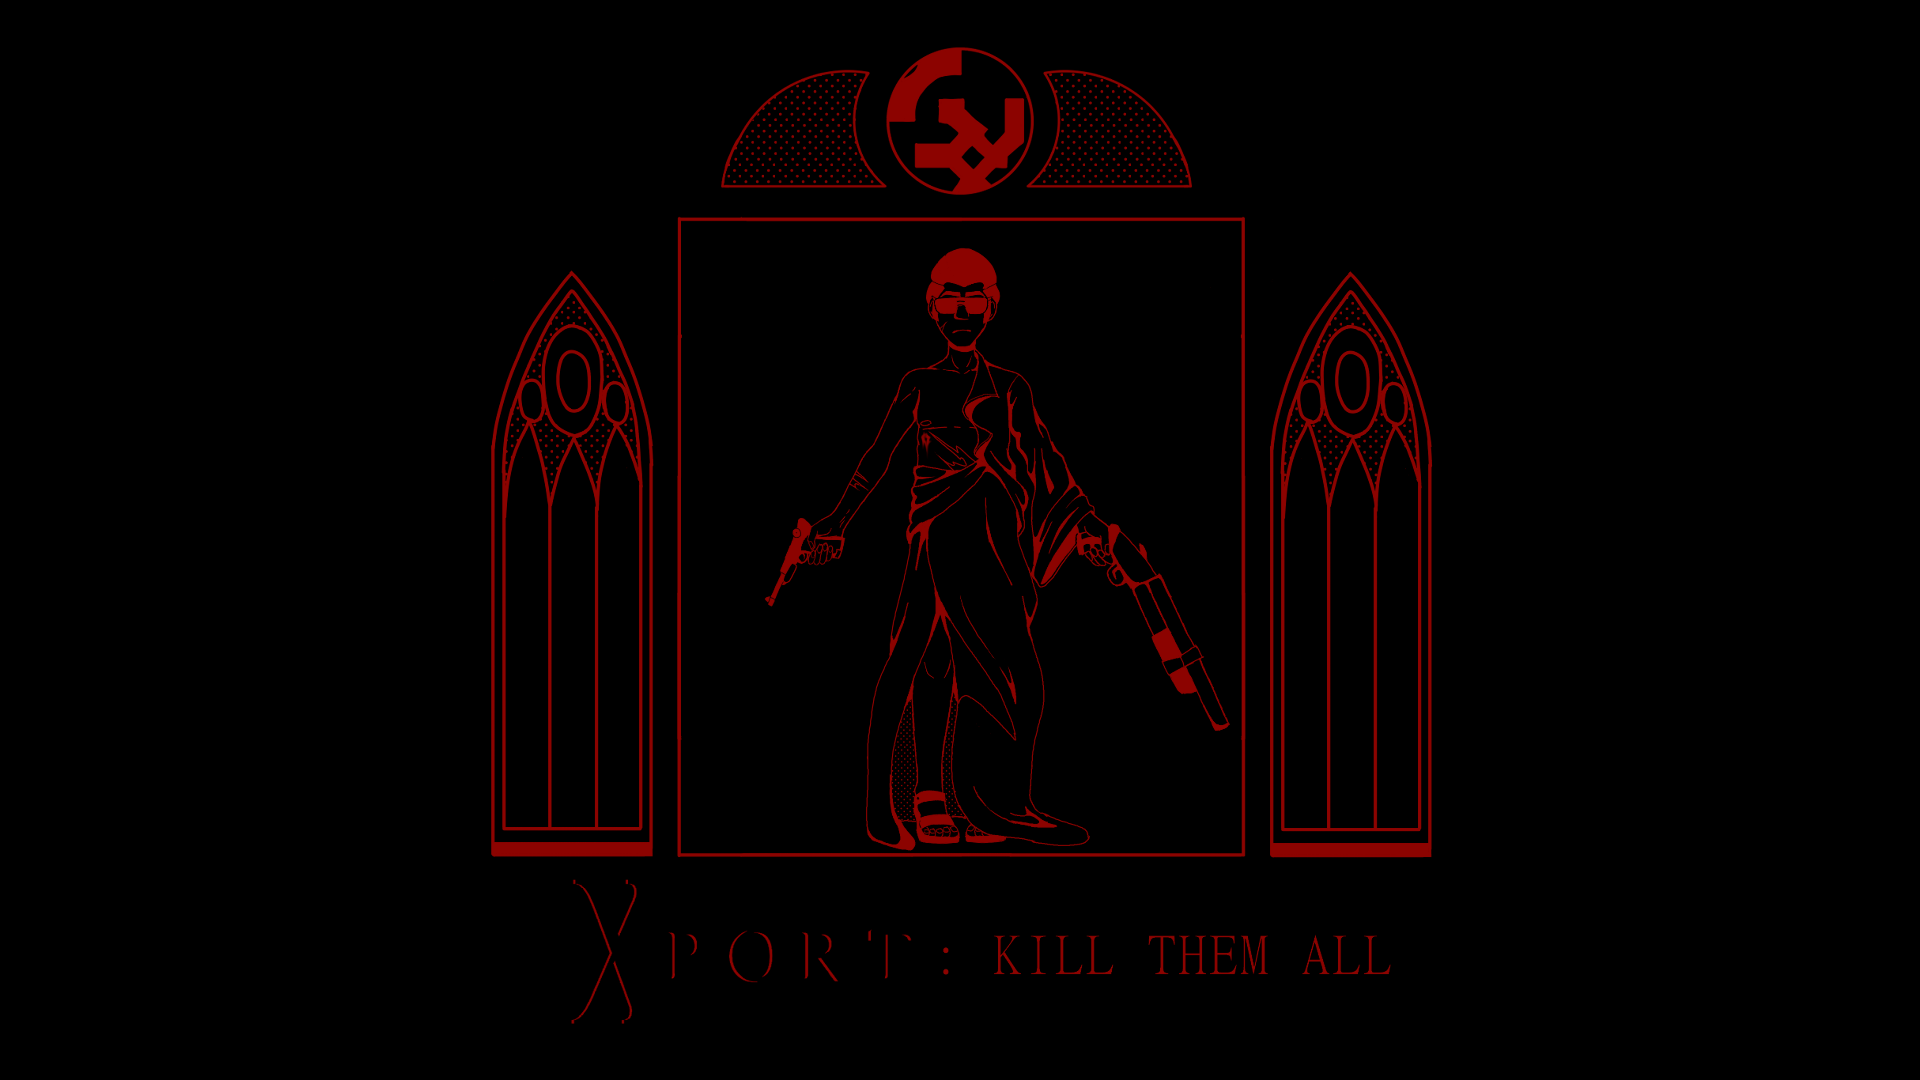 Xport Kill Them All